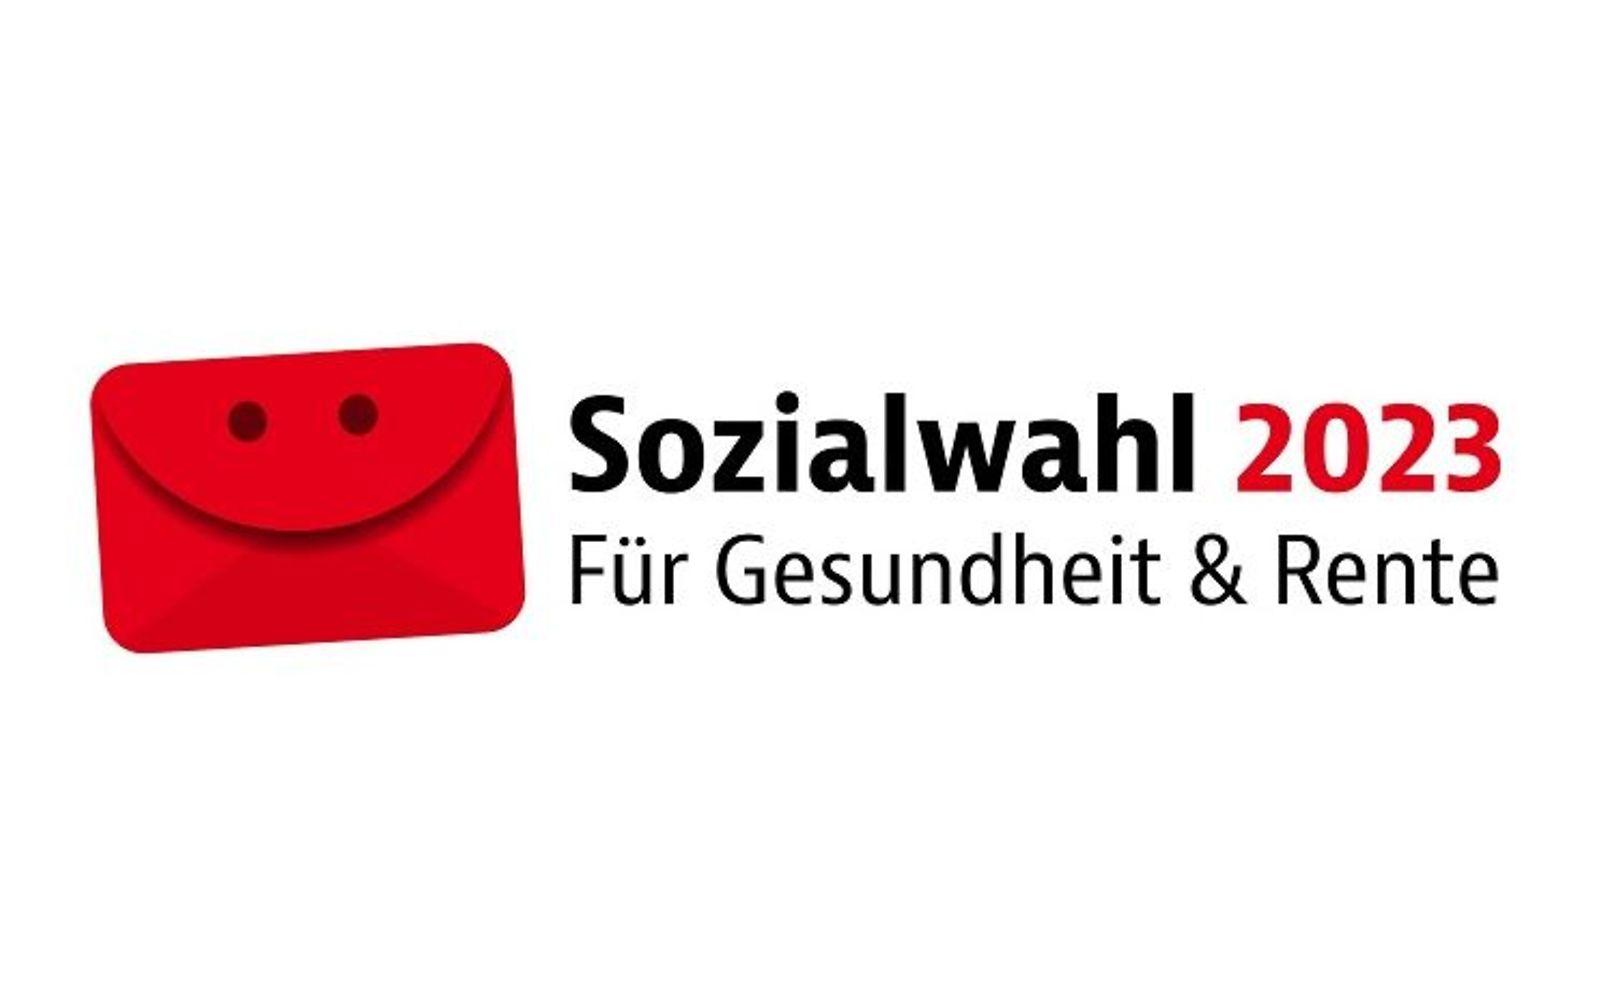 Logo der Sozialwahl 2023: Illustration eines roten Briefumschlags mit Augen und Mund sowie dem Text "Für Gesundheit und Rente."